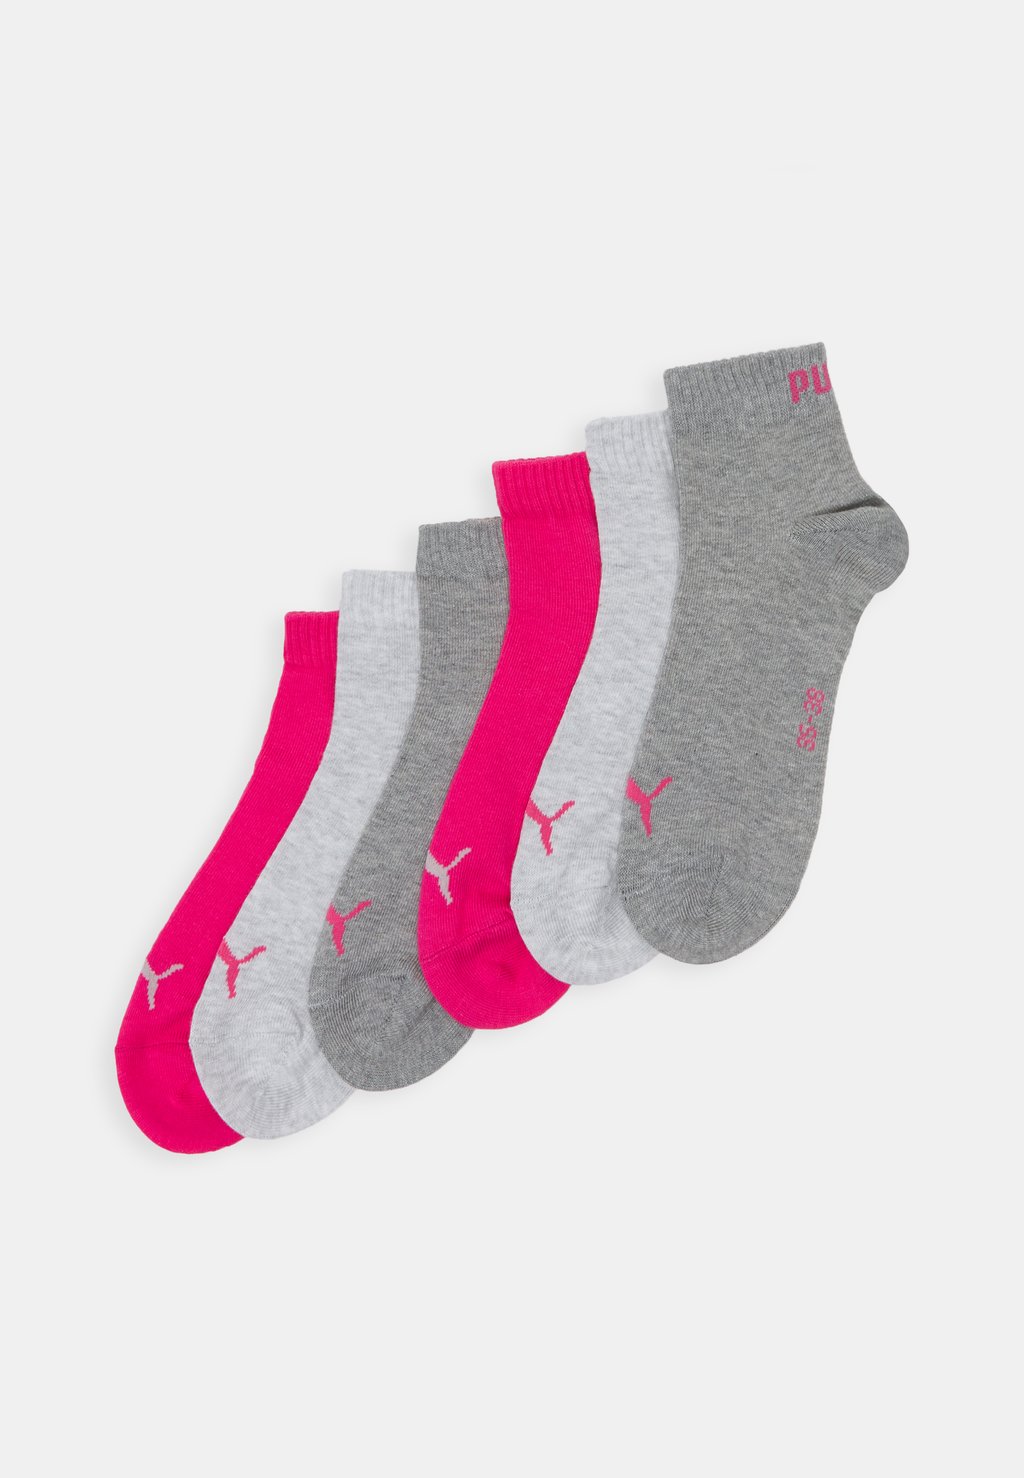 Спортивные носки Puma bugaboo ant стильный комплект complete grey melange pink melange